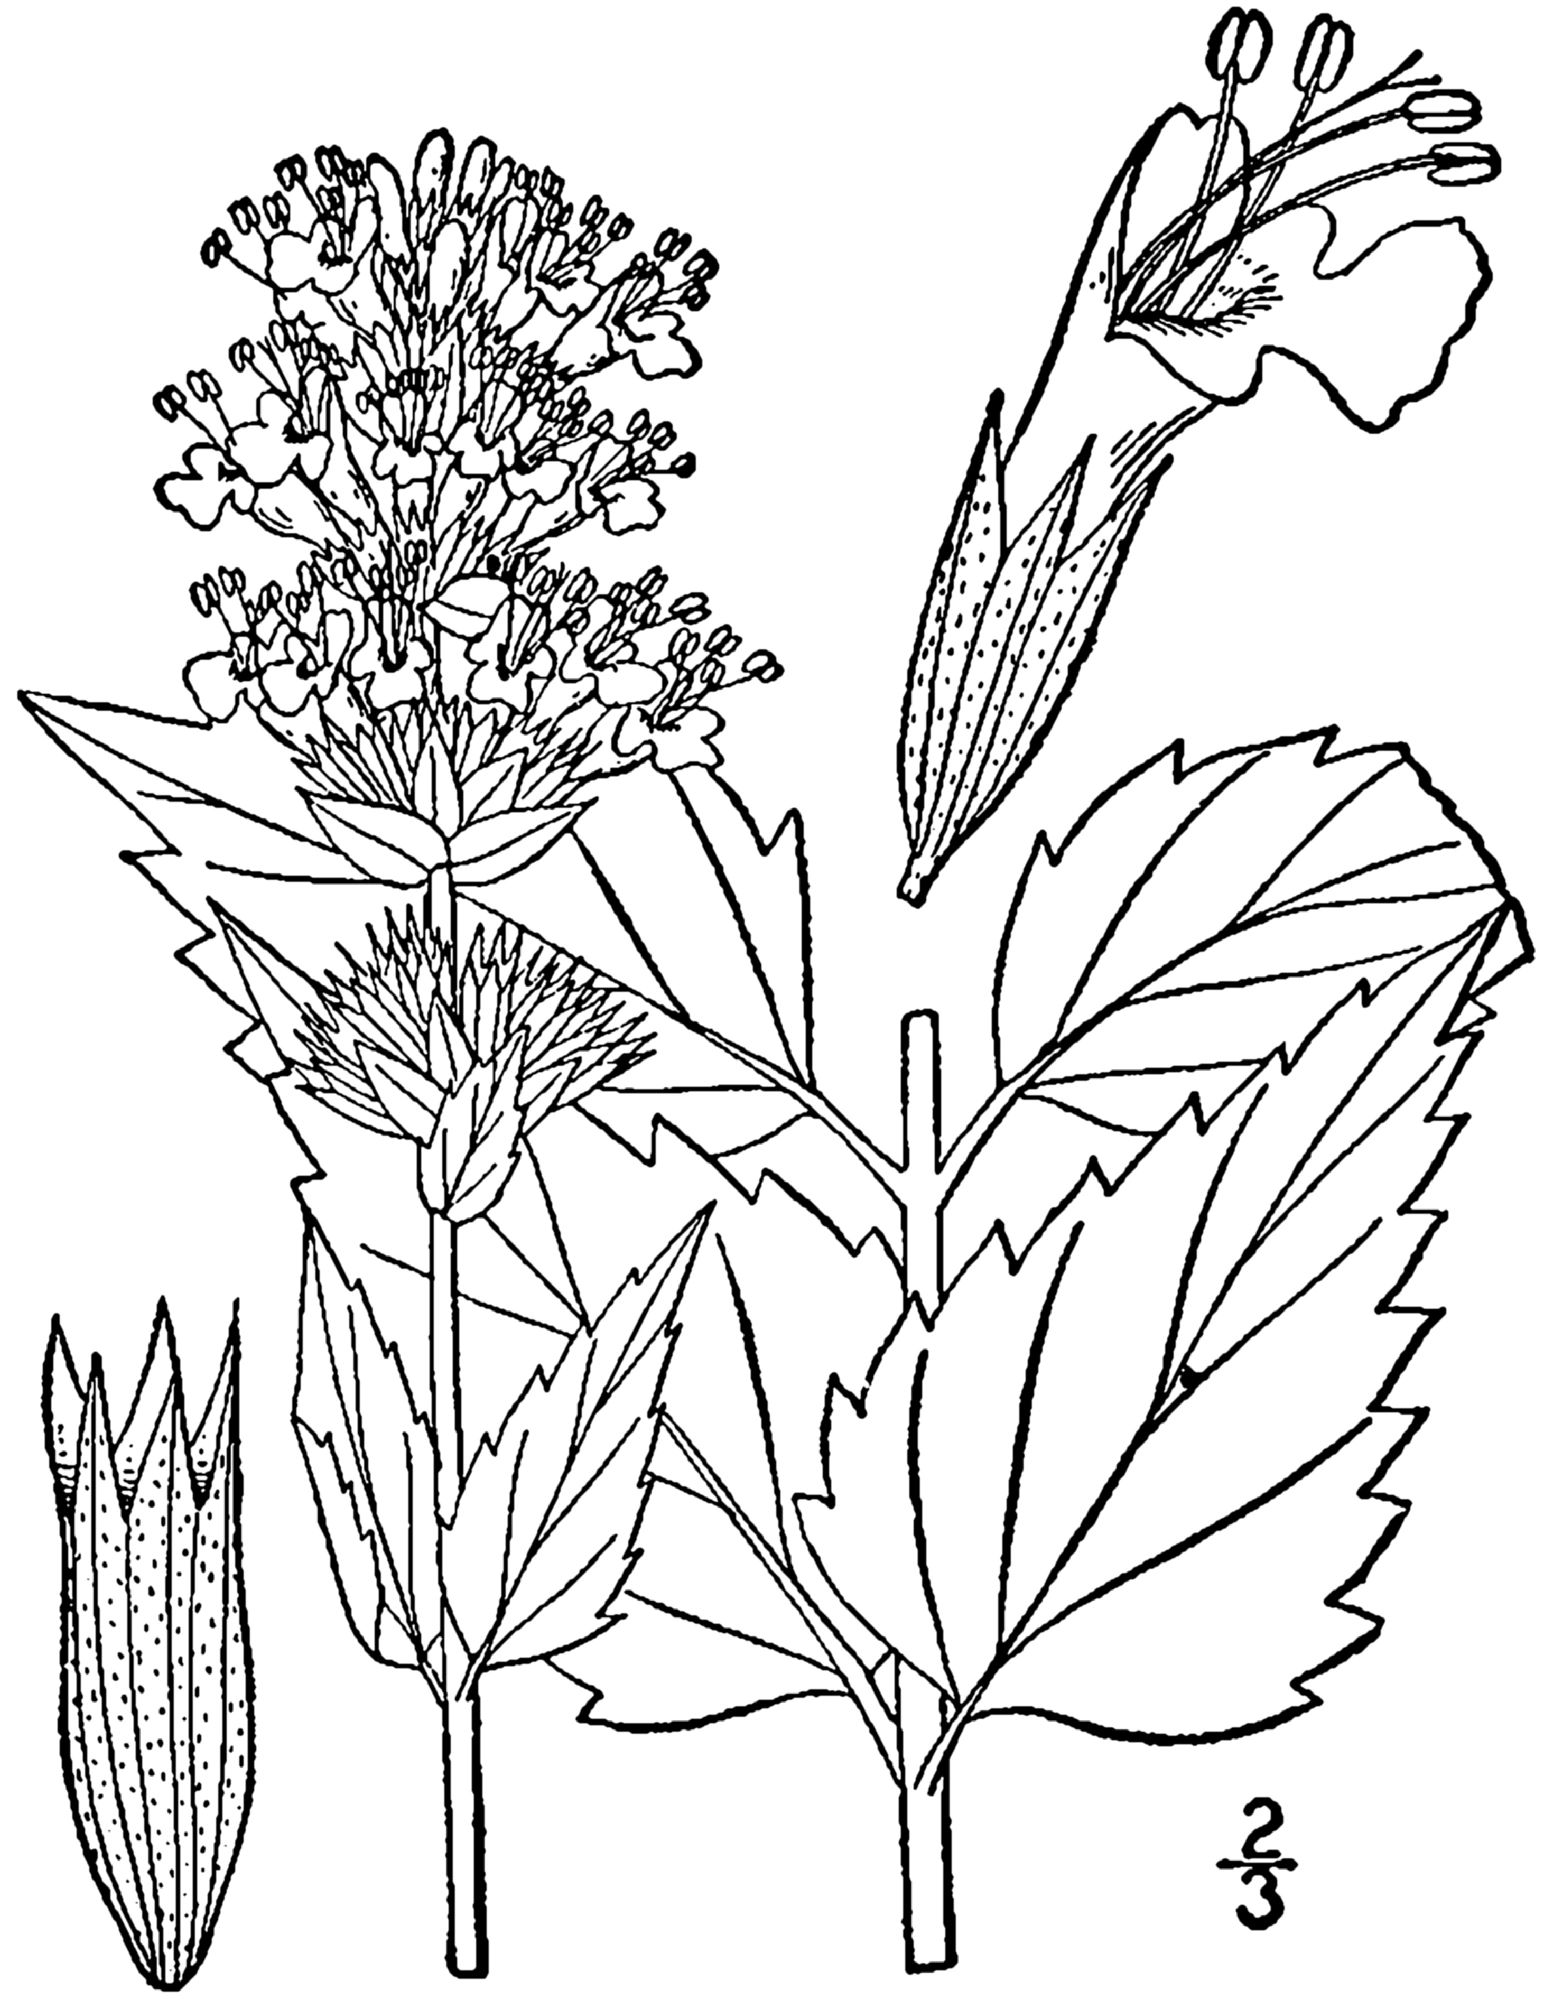 1482 original - Agastache foeniculum - Anise hyssop